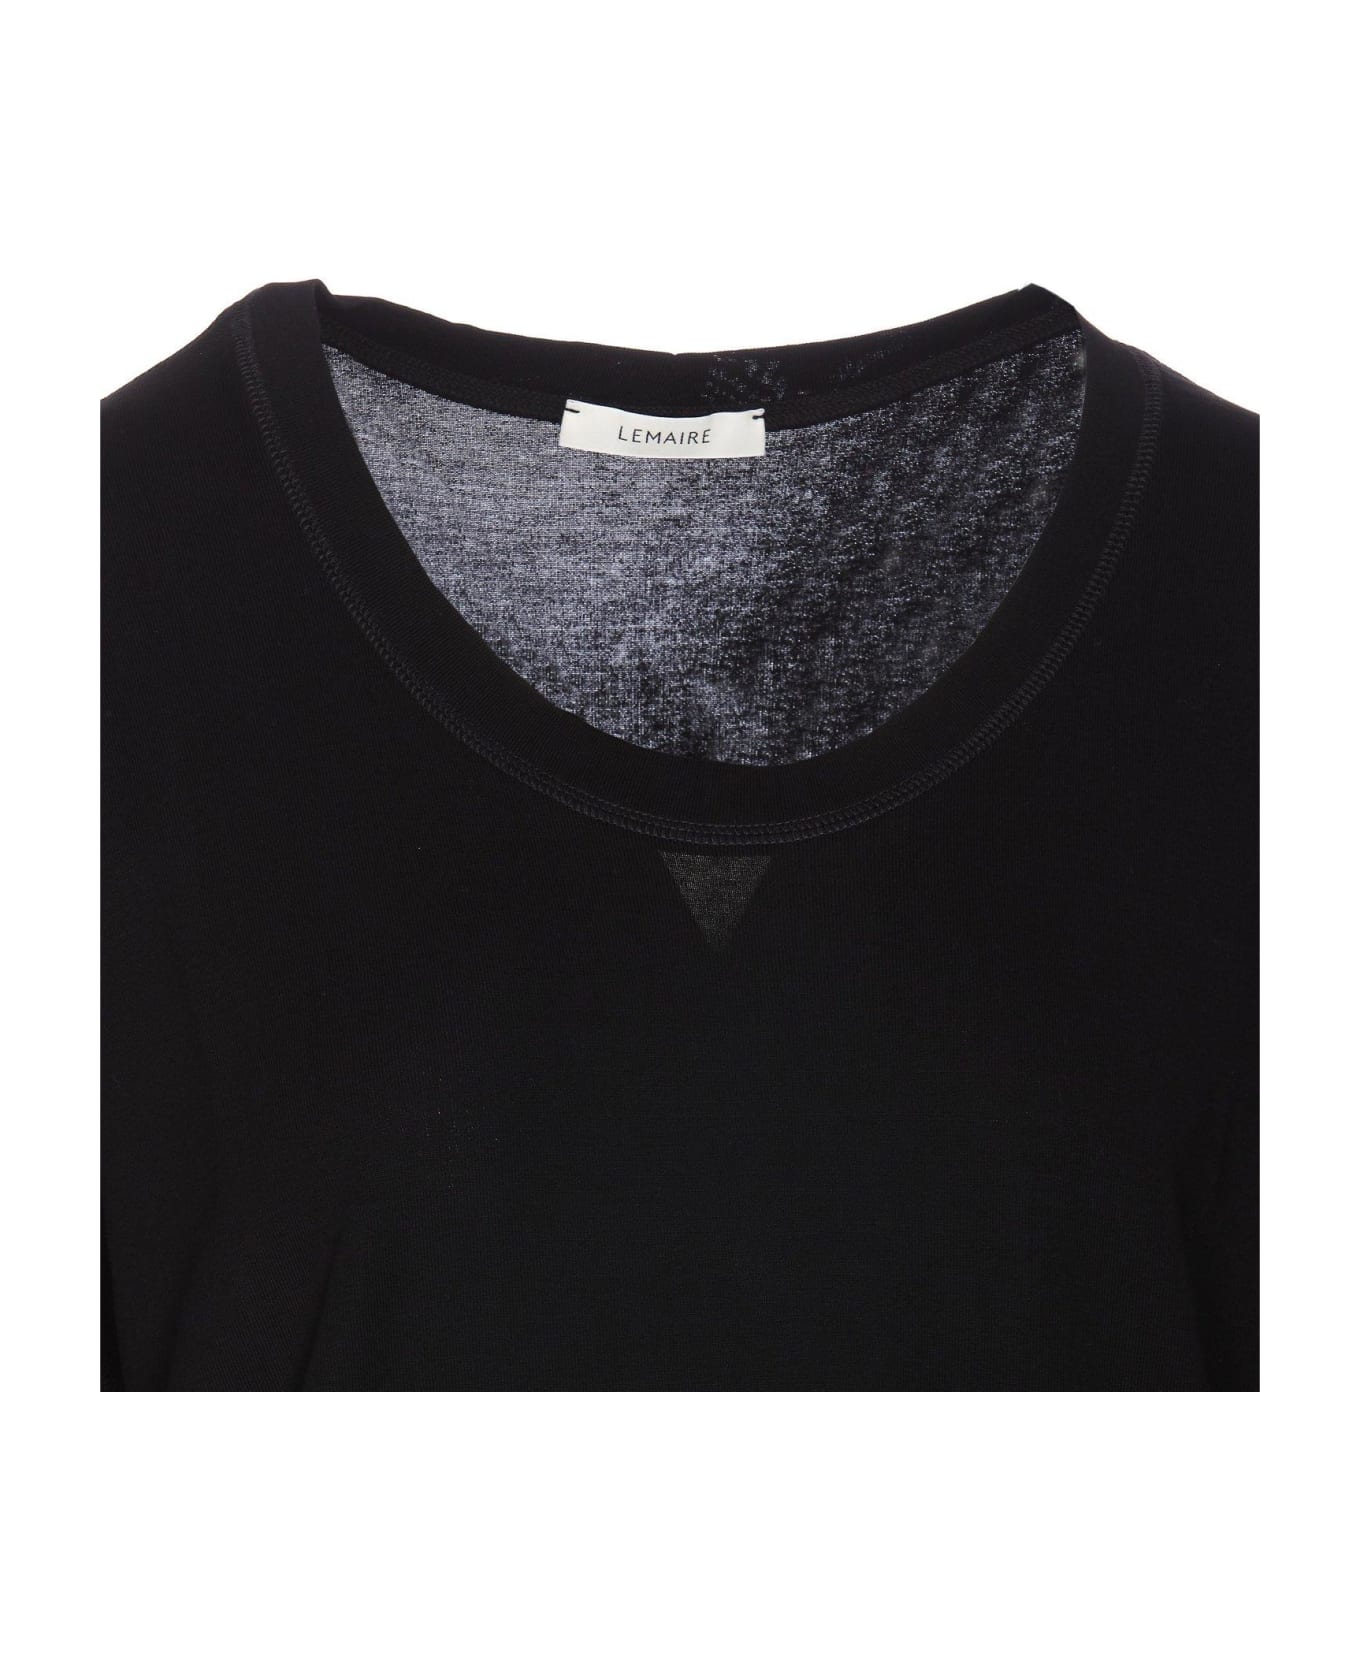 Lemaire T-shirt - Black